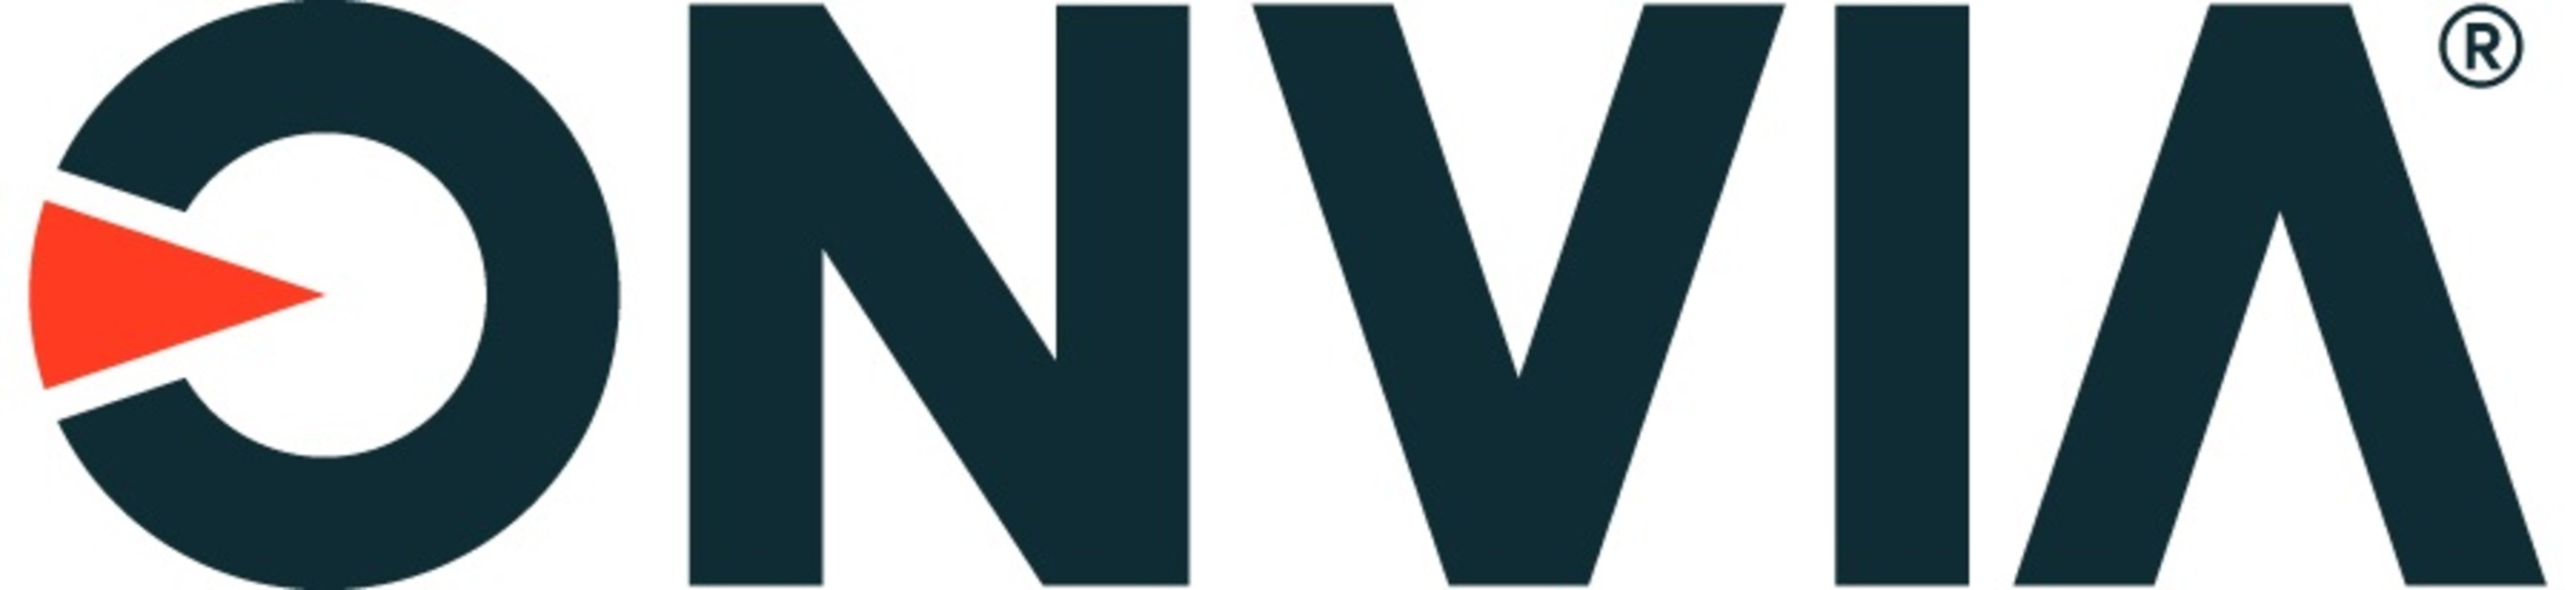 Onvia, Inc. Logo.